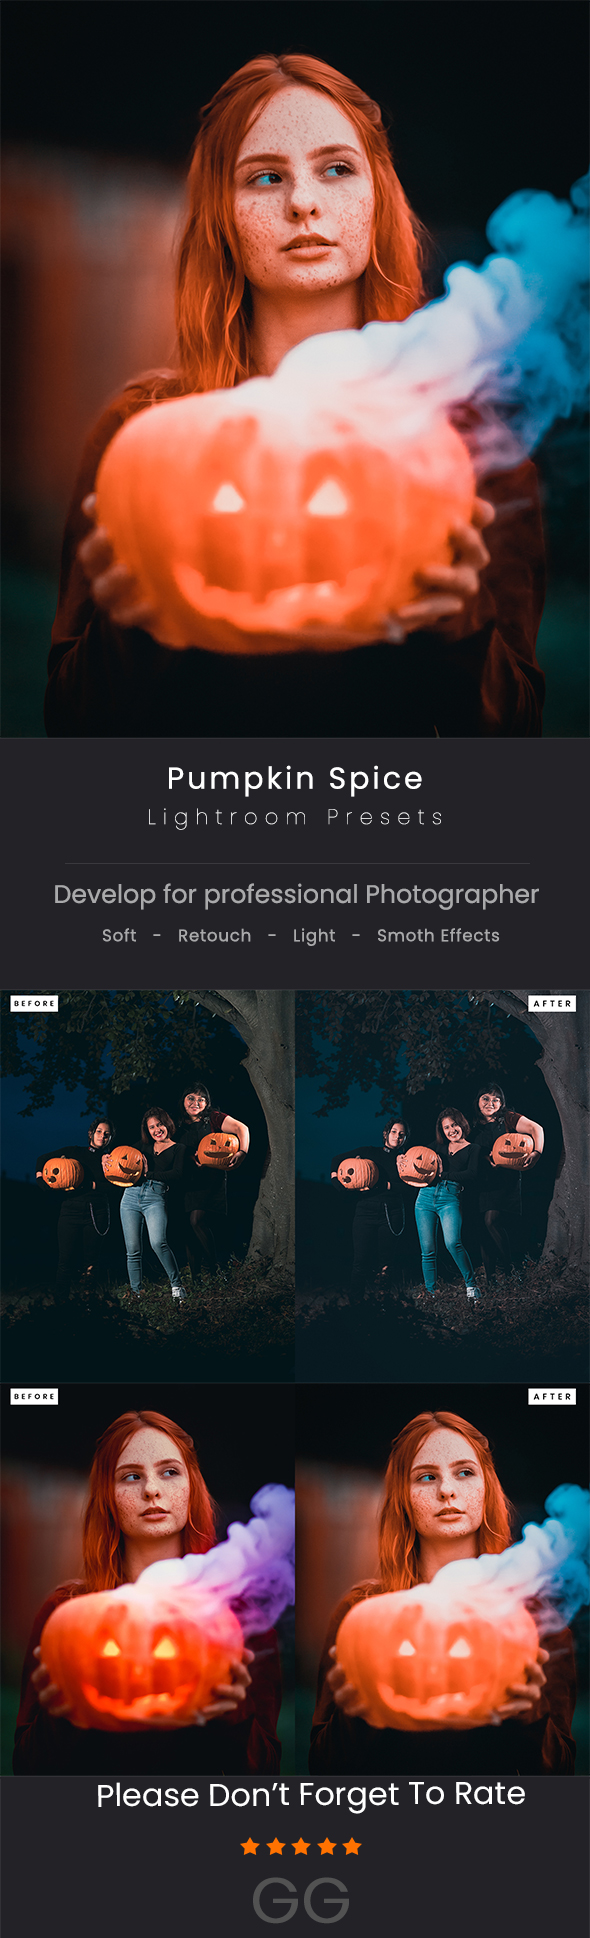 [DOWNLOAD]Pumpkin Spice Lightroom Presets